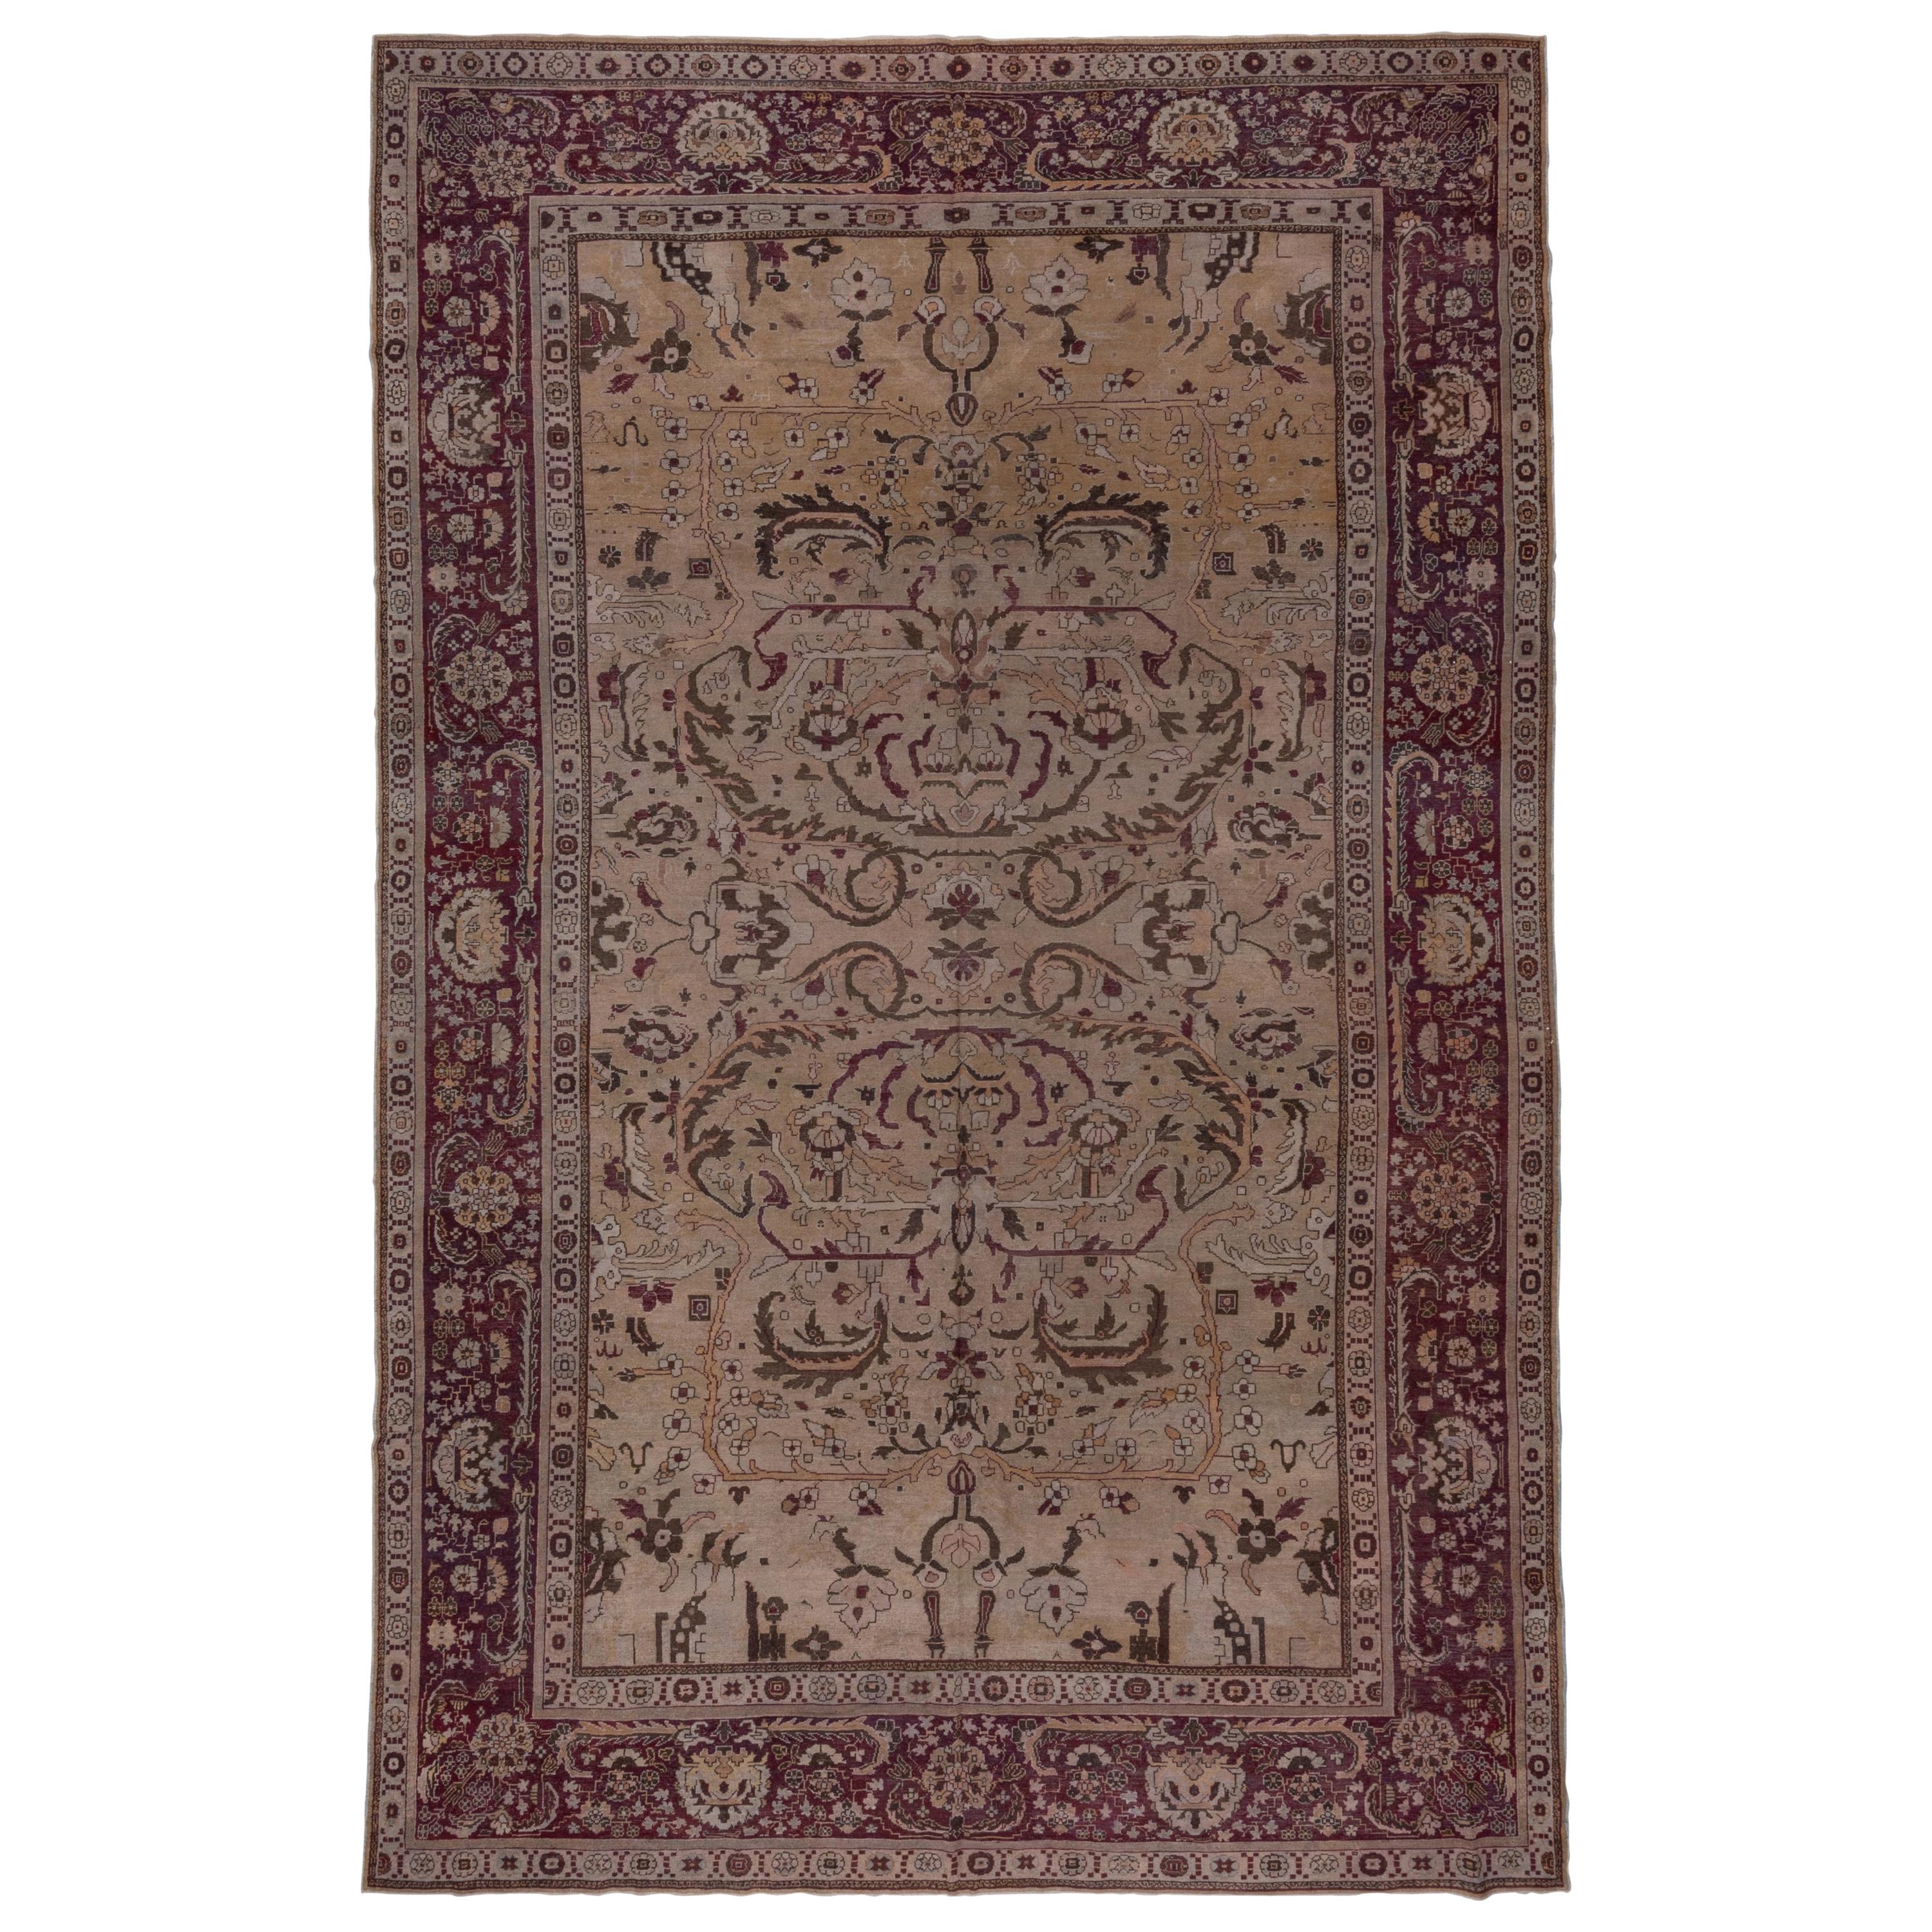 Antique Indian Amritsar Carpet, circa 1920s